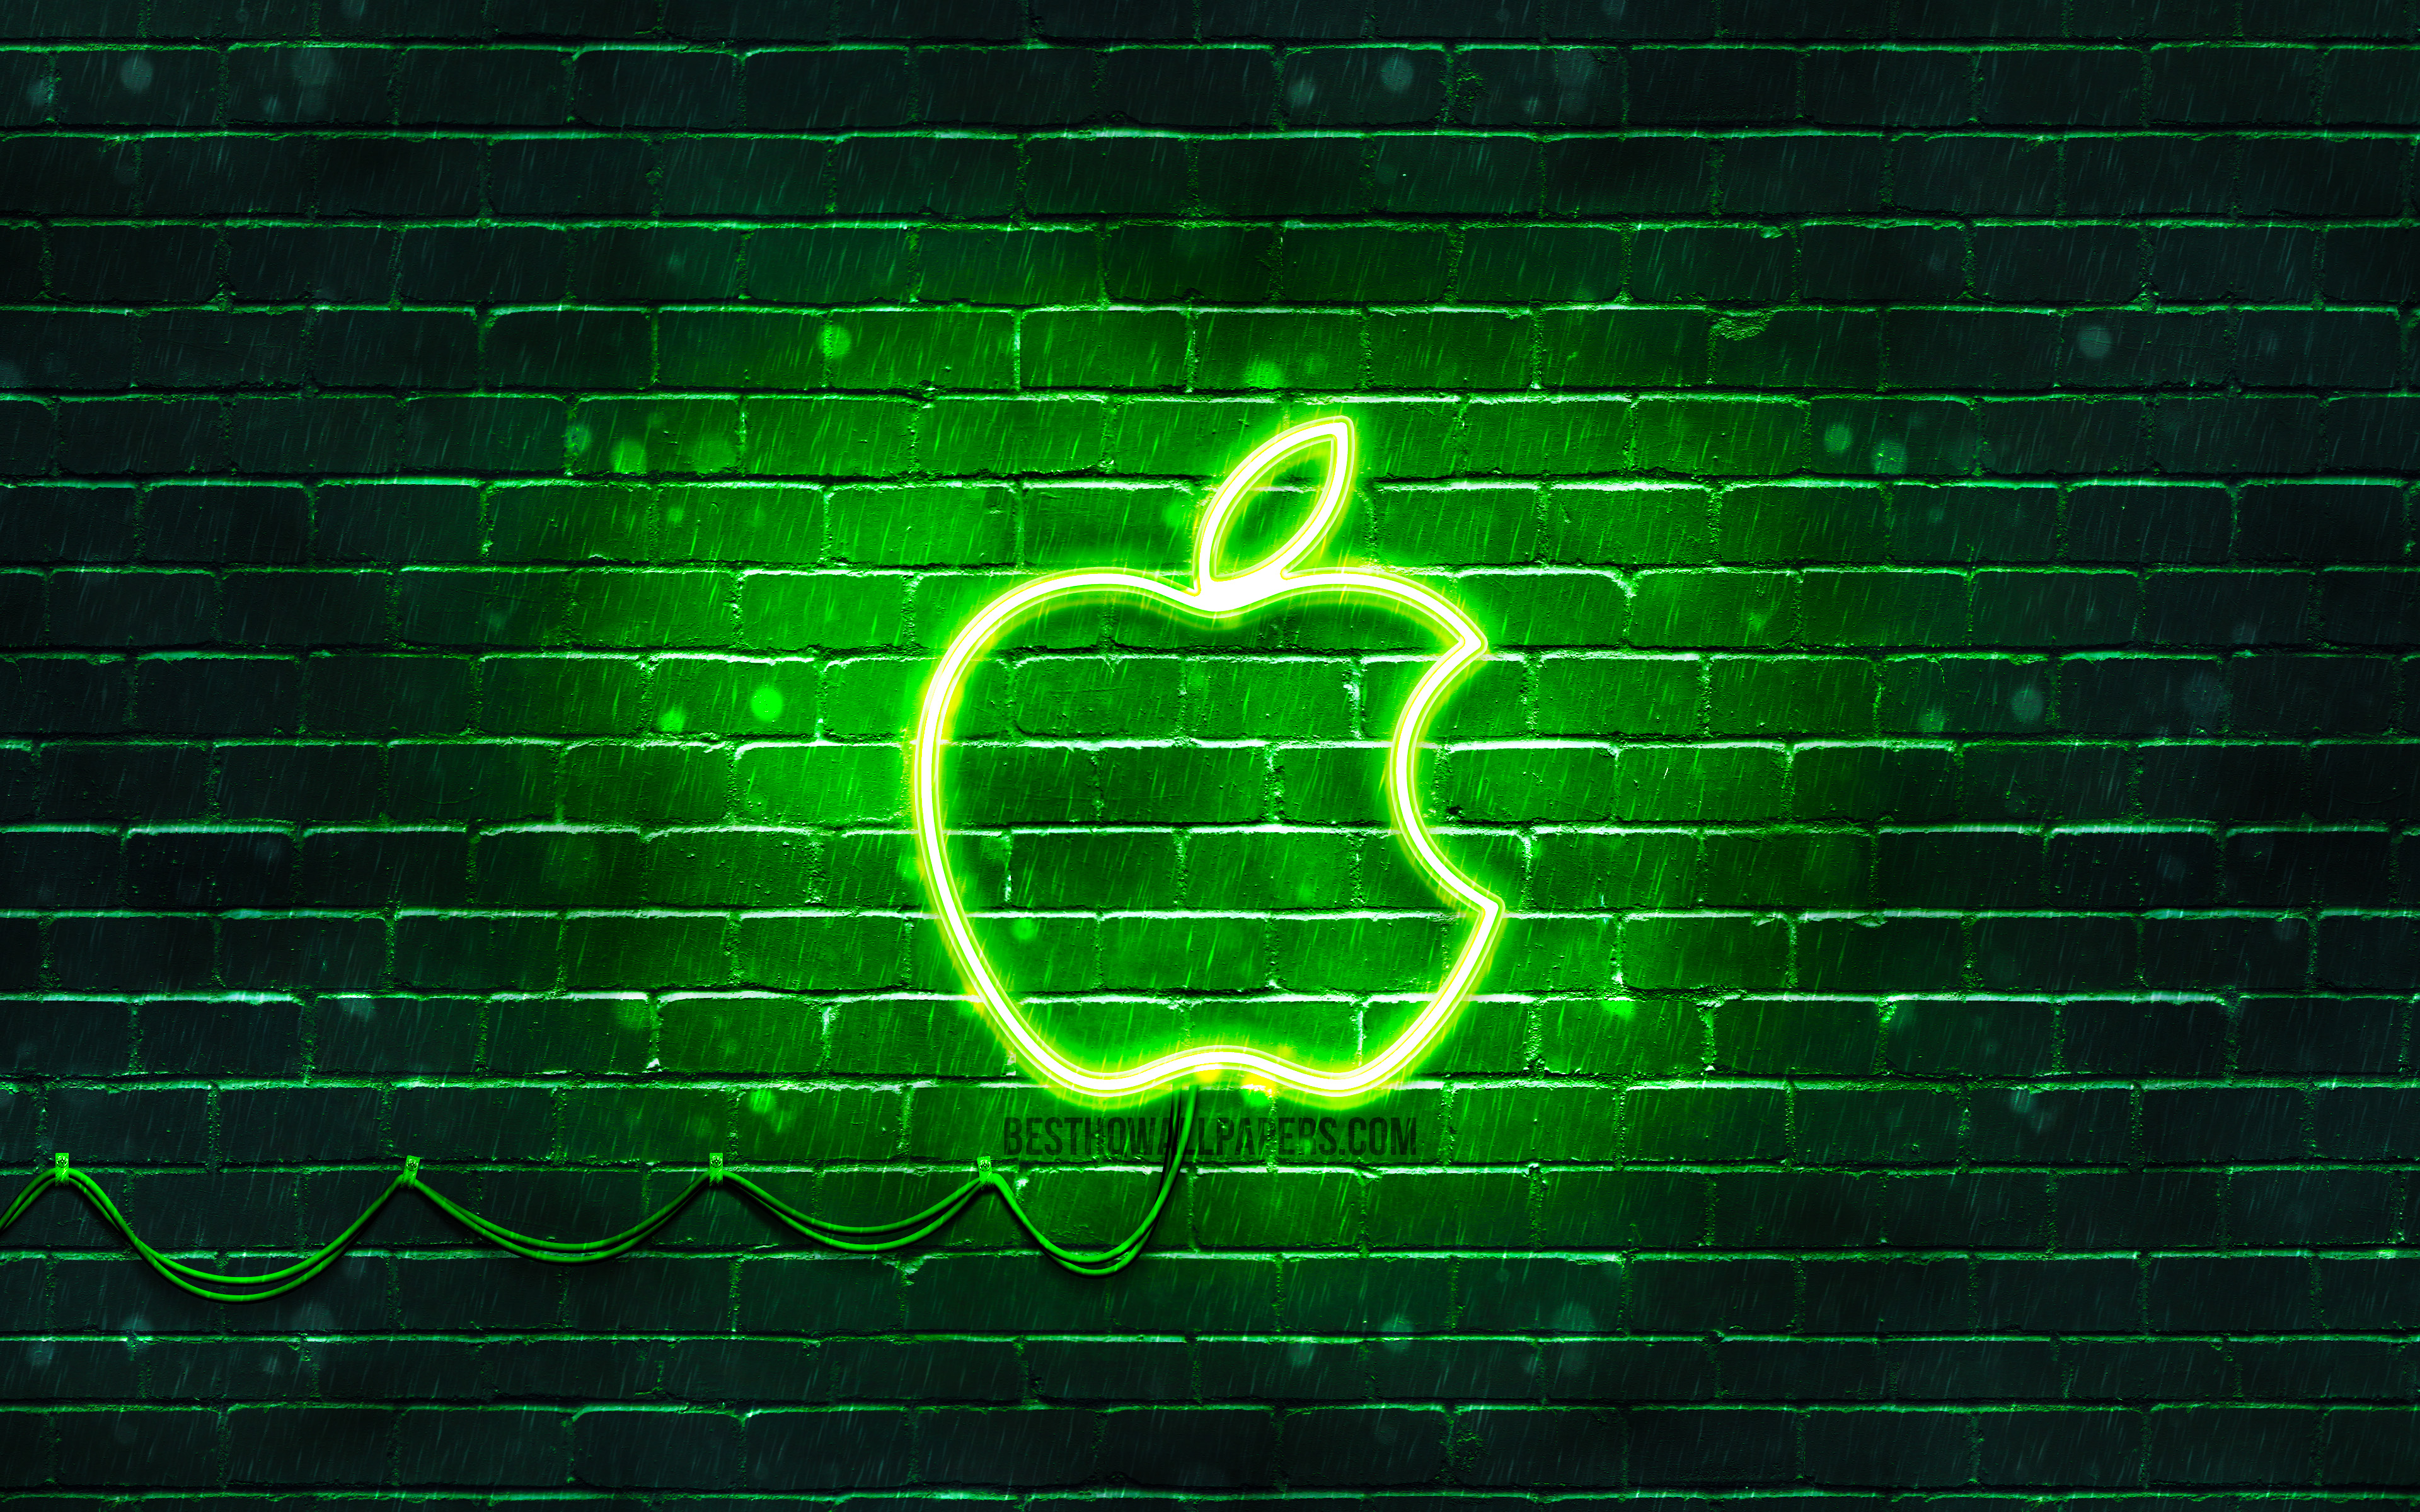 Неоновый логотип Apple